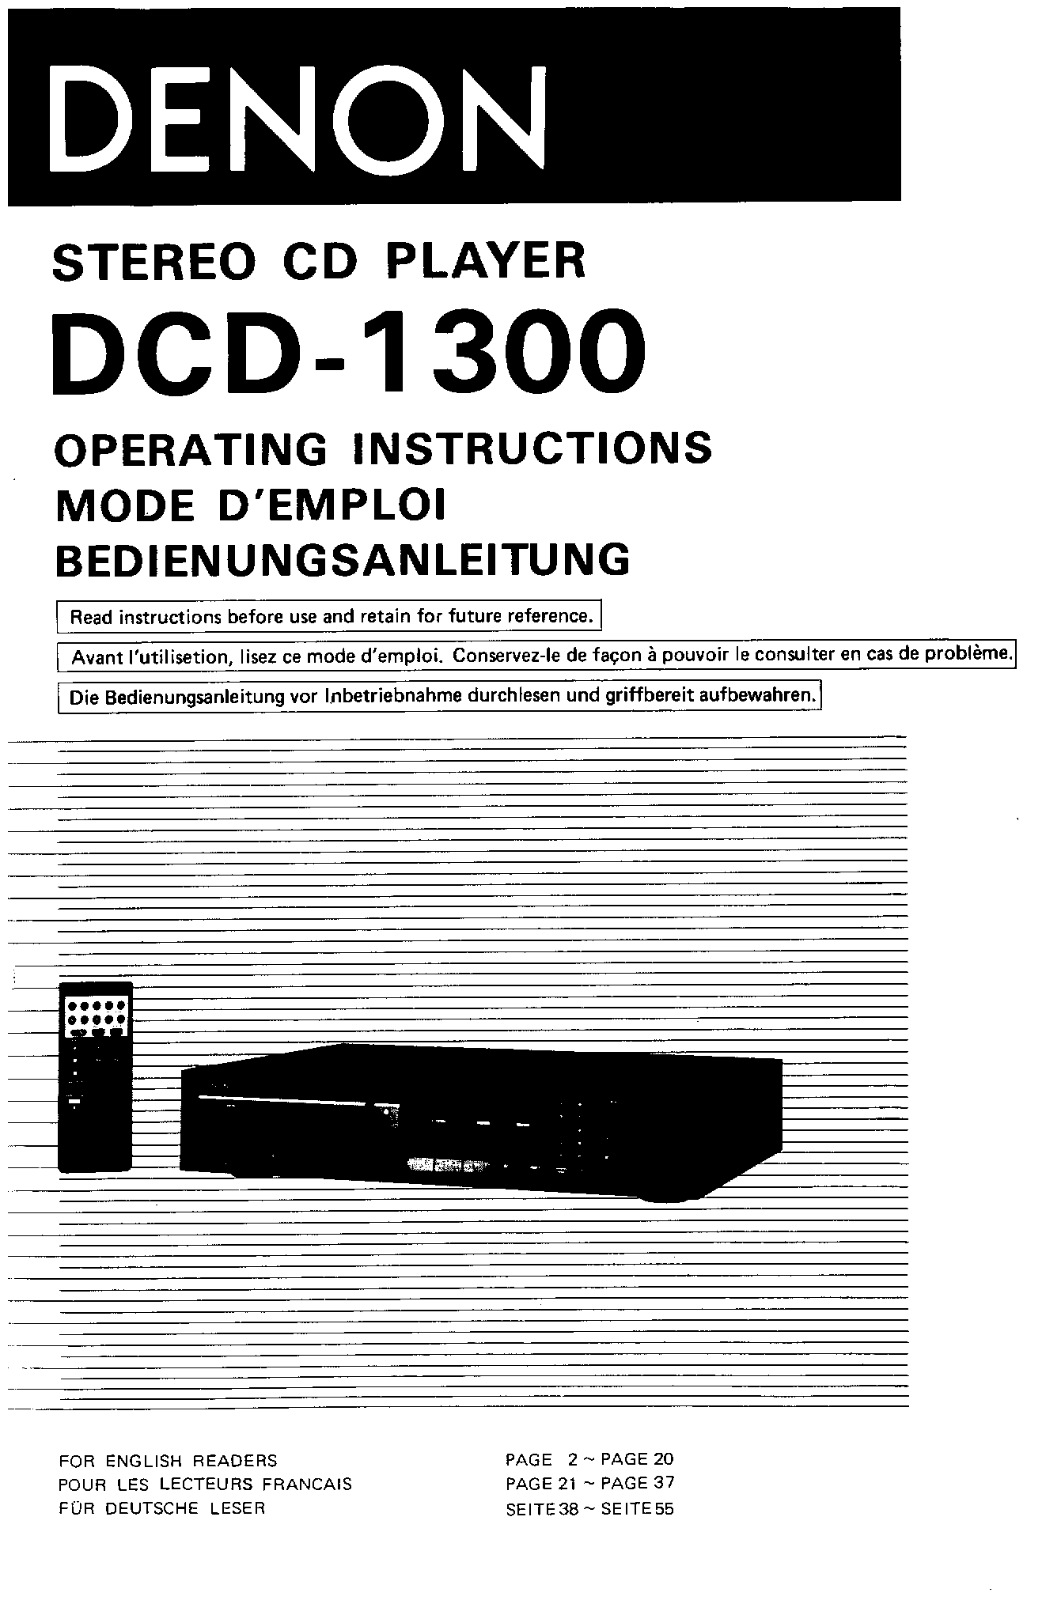 Denon DCD-1300 Owner's Manual